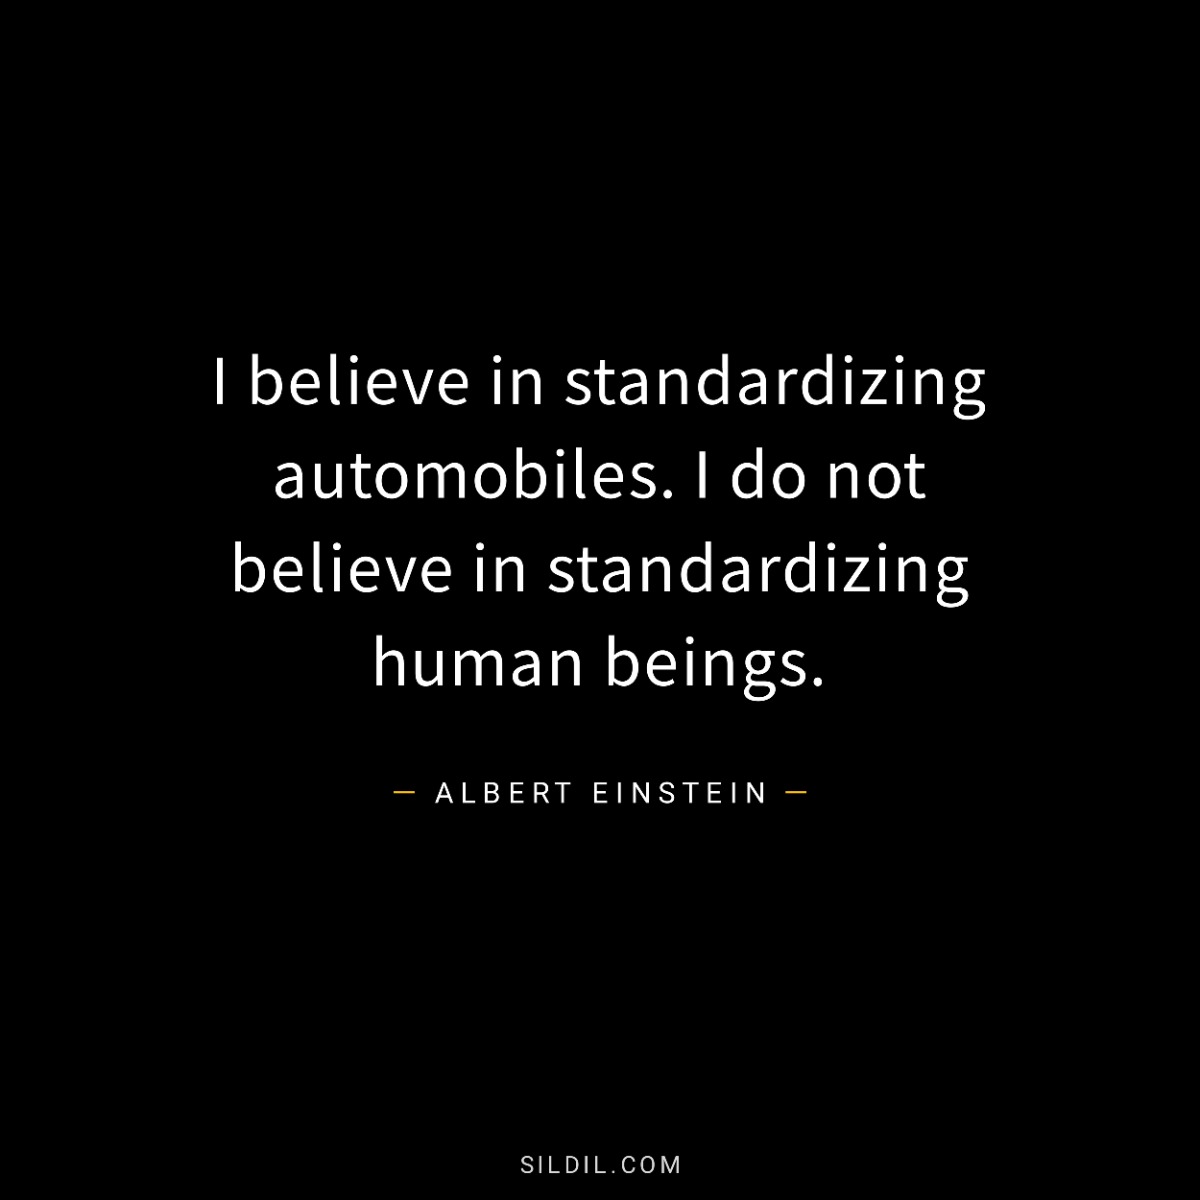 I believe in standardizing automobiles. I do not believe in standardizing human beings.